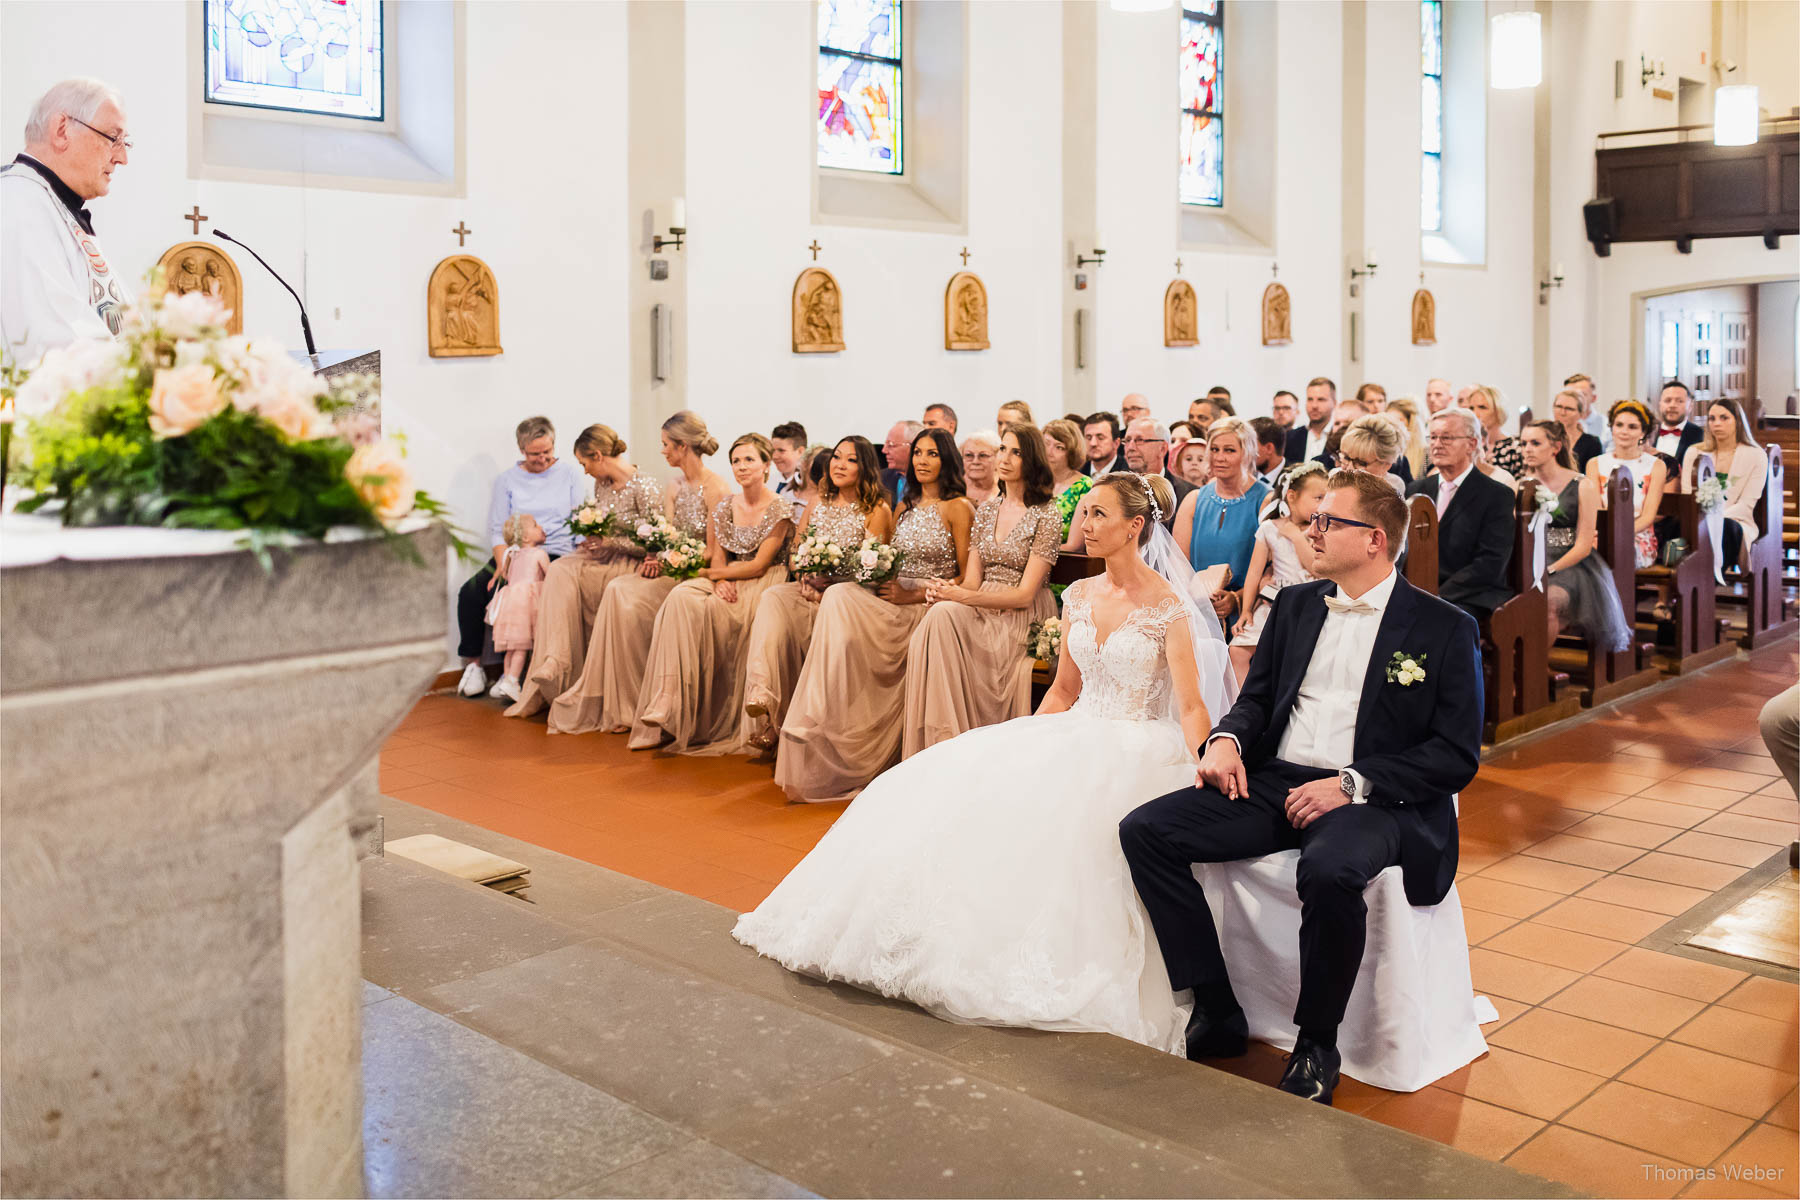 Kirchliche Hochzeit und Hochzeitsfeier, Hochzeitsfotograf Ostfriesland, Thomas Weber